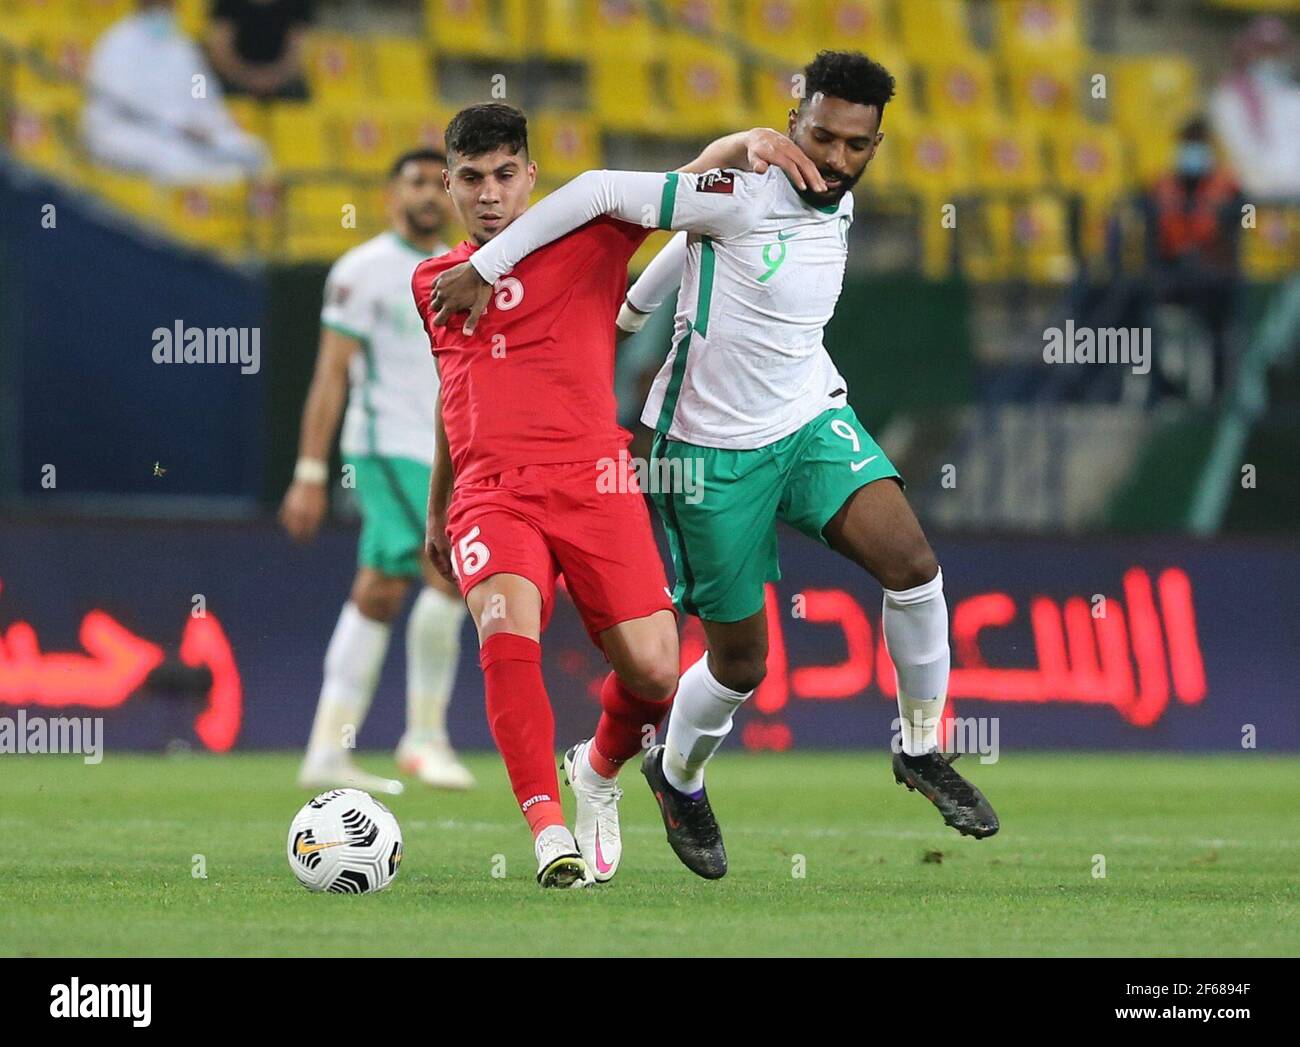 Calcio Calcio - Campionato del mondo Qualificatori Asia - turno 2 - Gruppo  D - Arabia Saudita contro Palestina - Stadio della King Saud University,  Riyadh, Arabia Saudita - 30 marzo 2021